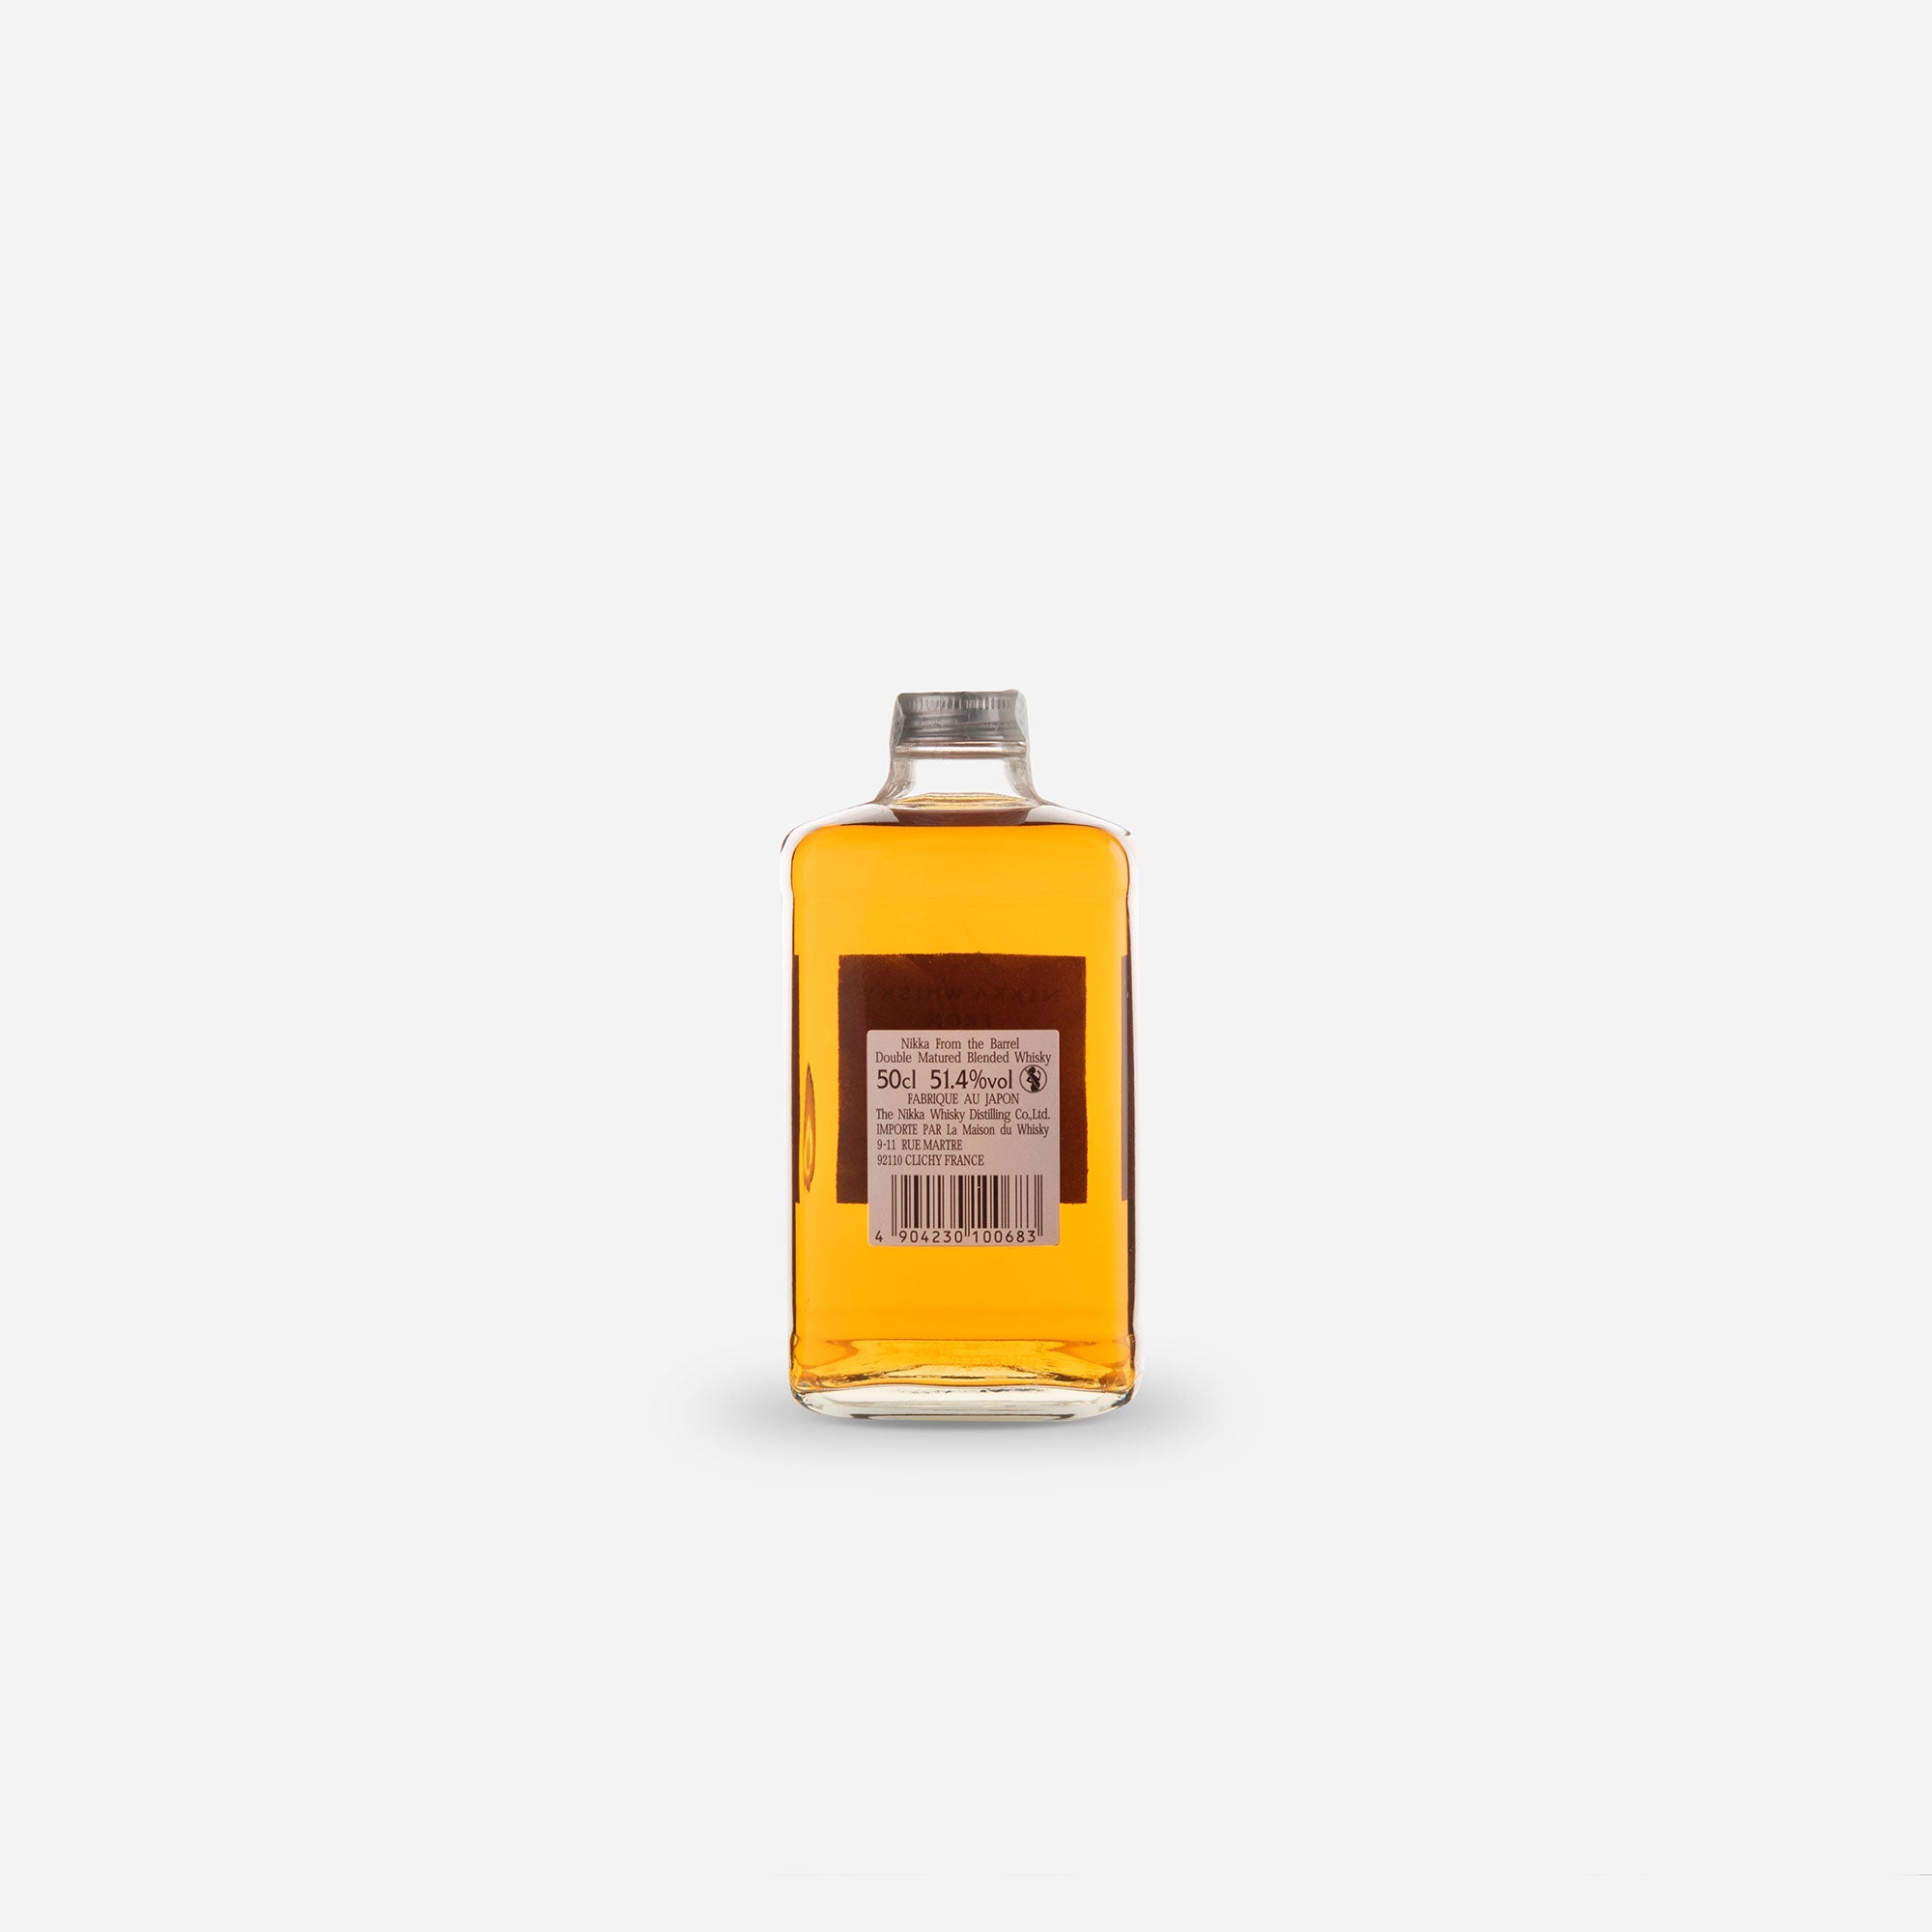 Buy Nikka Whisky From The Barrel Blended Malt Whisky 50cl in Ras